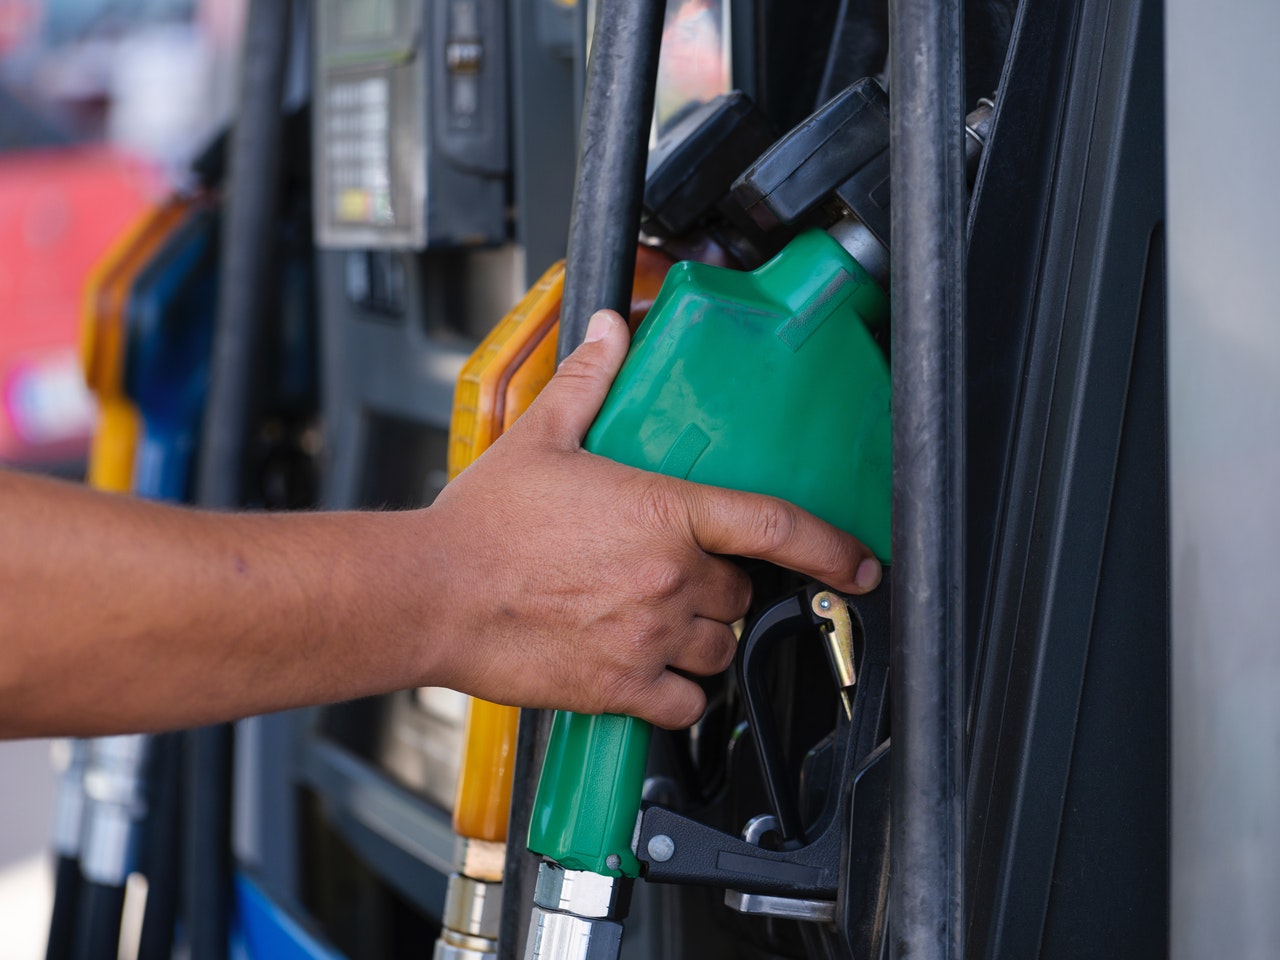 Kje liter bencina stane le dva centa in kje skoraj tri evre?